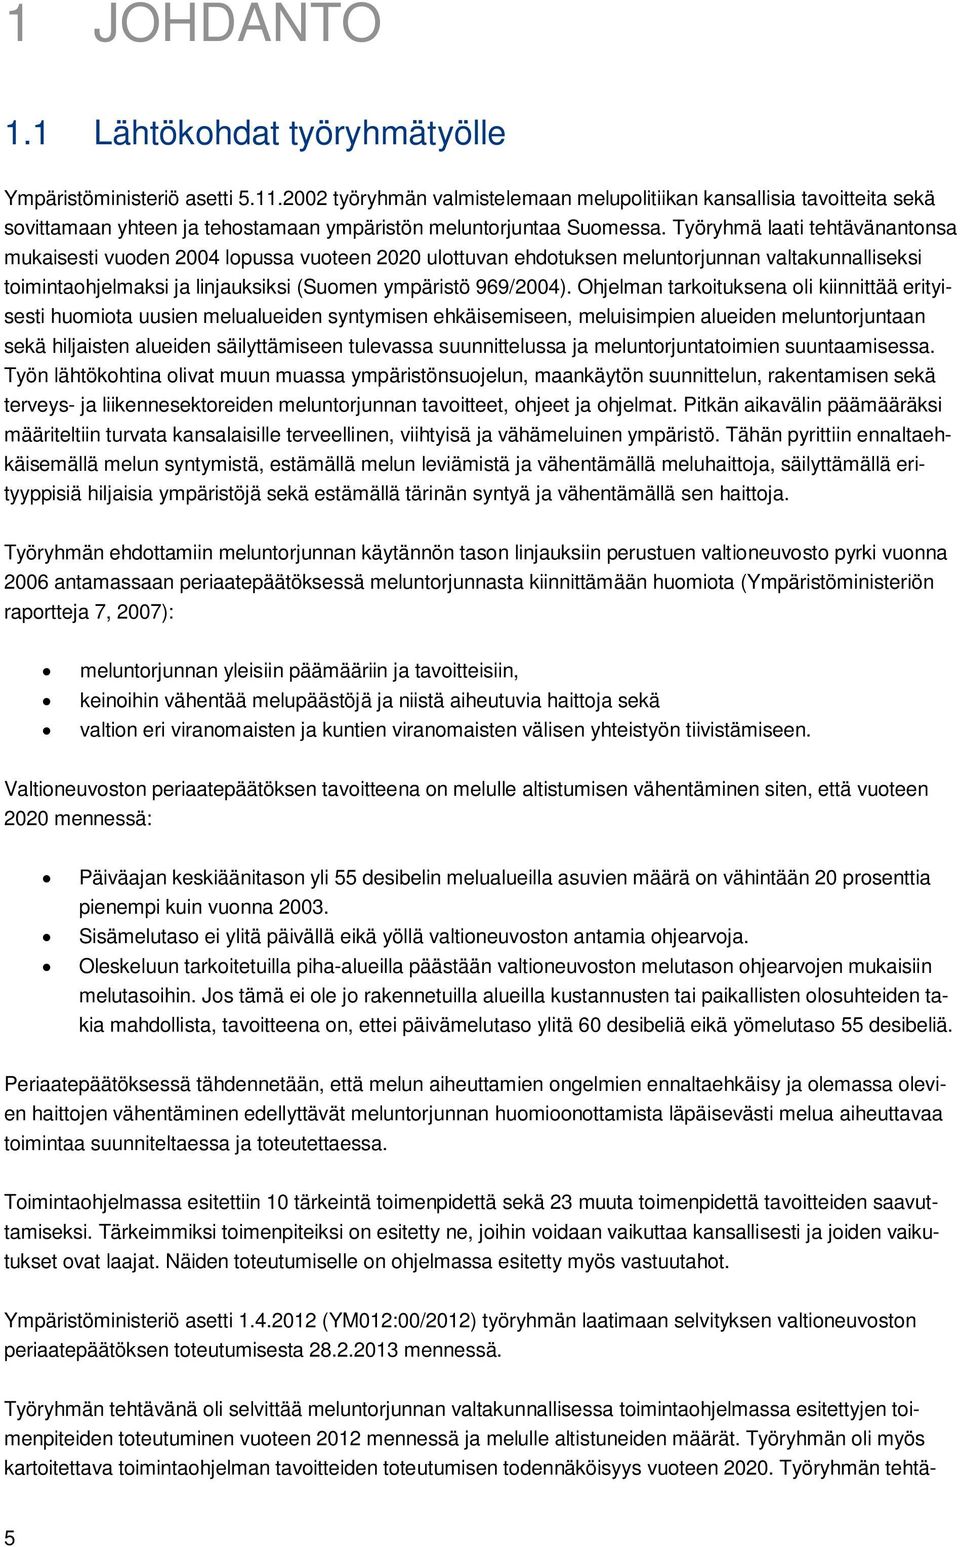 Työryhmä laati tehtävänantonsa mukaisesti vuoden 2004 lopussa vuoteen 2020 ulottuvan ehdotuksen meluntorjunnan valtakunnalliseksi toimintaohjelmaksi ja linjauksiksi (Suomen ympäristö 969/2004).